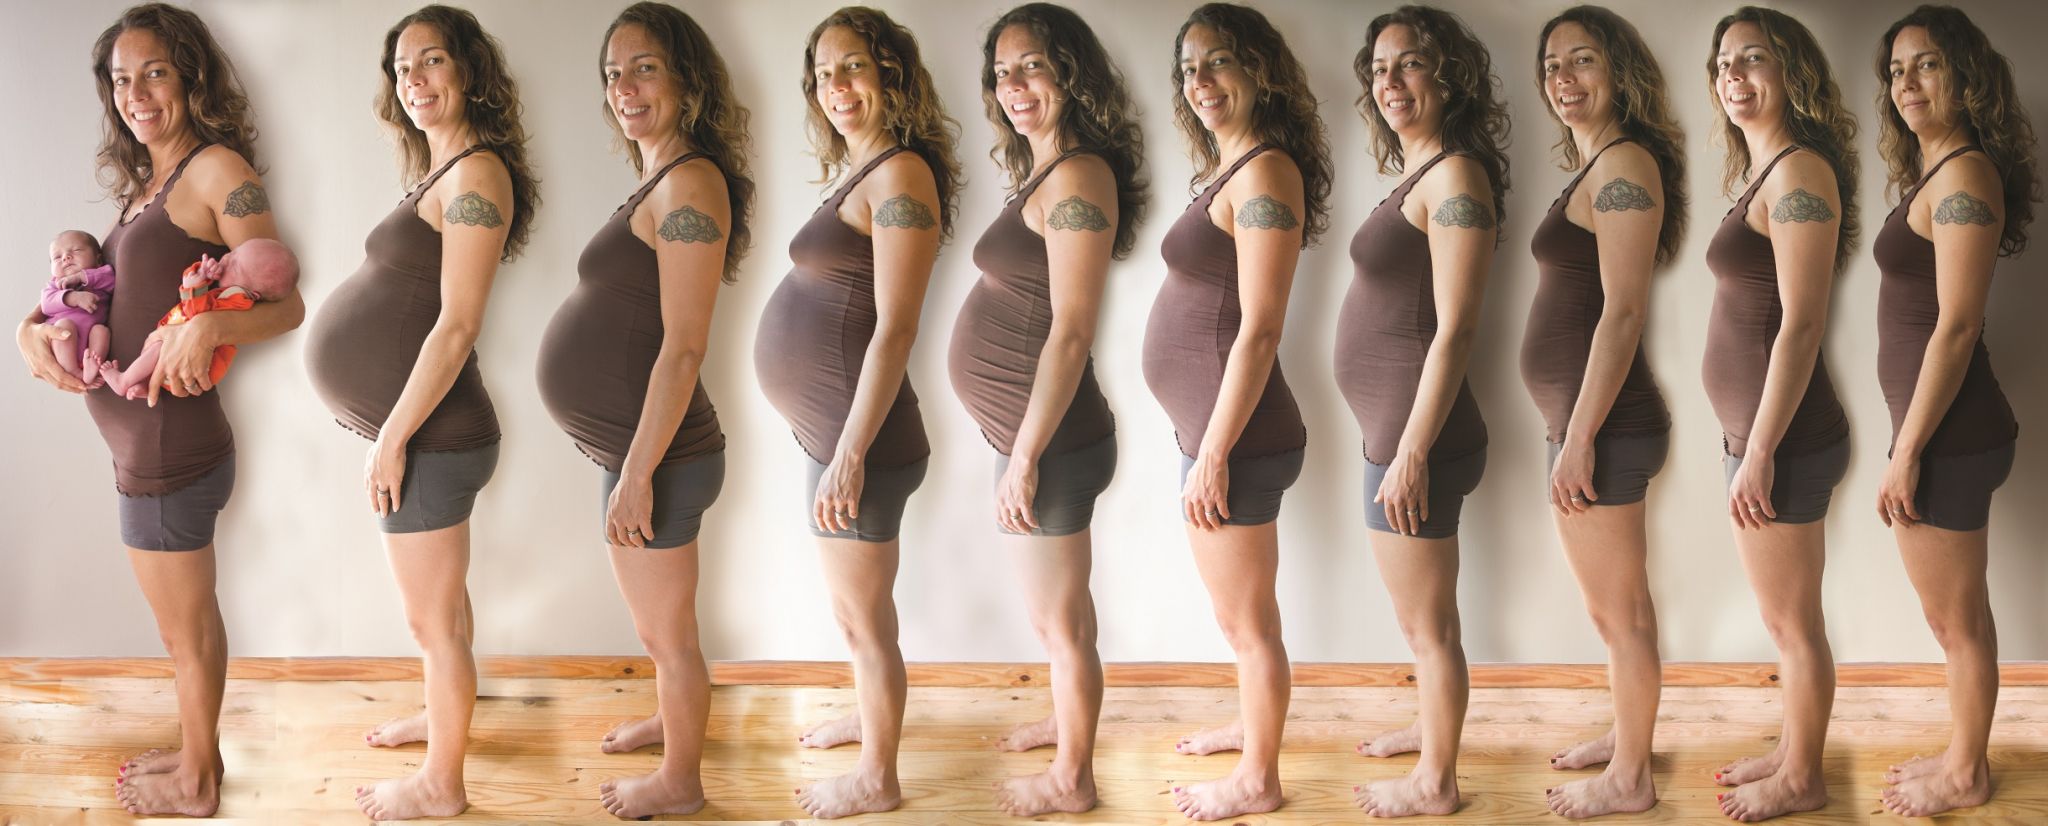 6 неделя беременности только грудь увеличилась фото 23